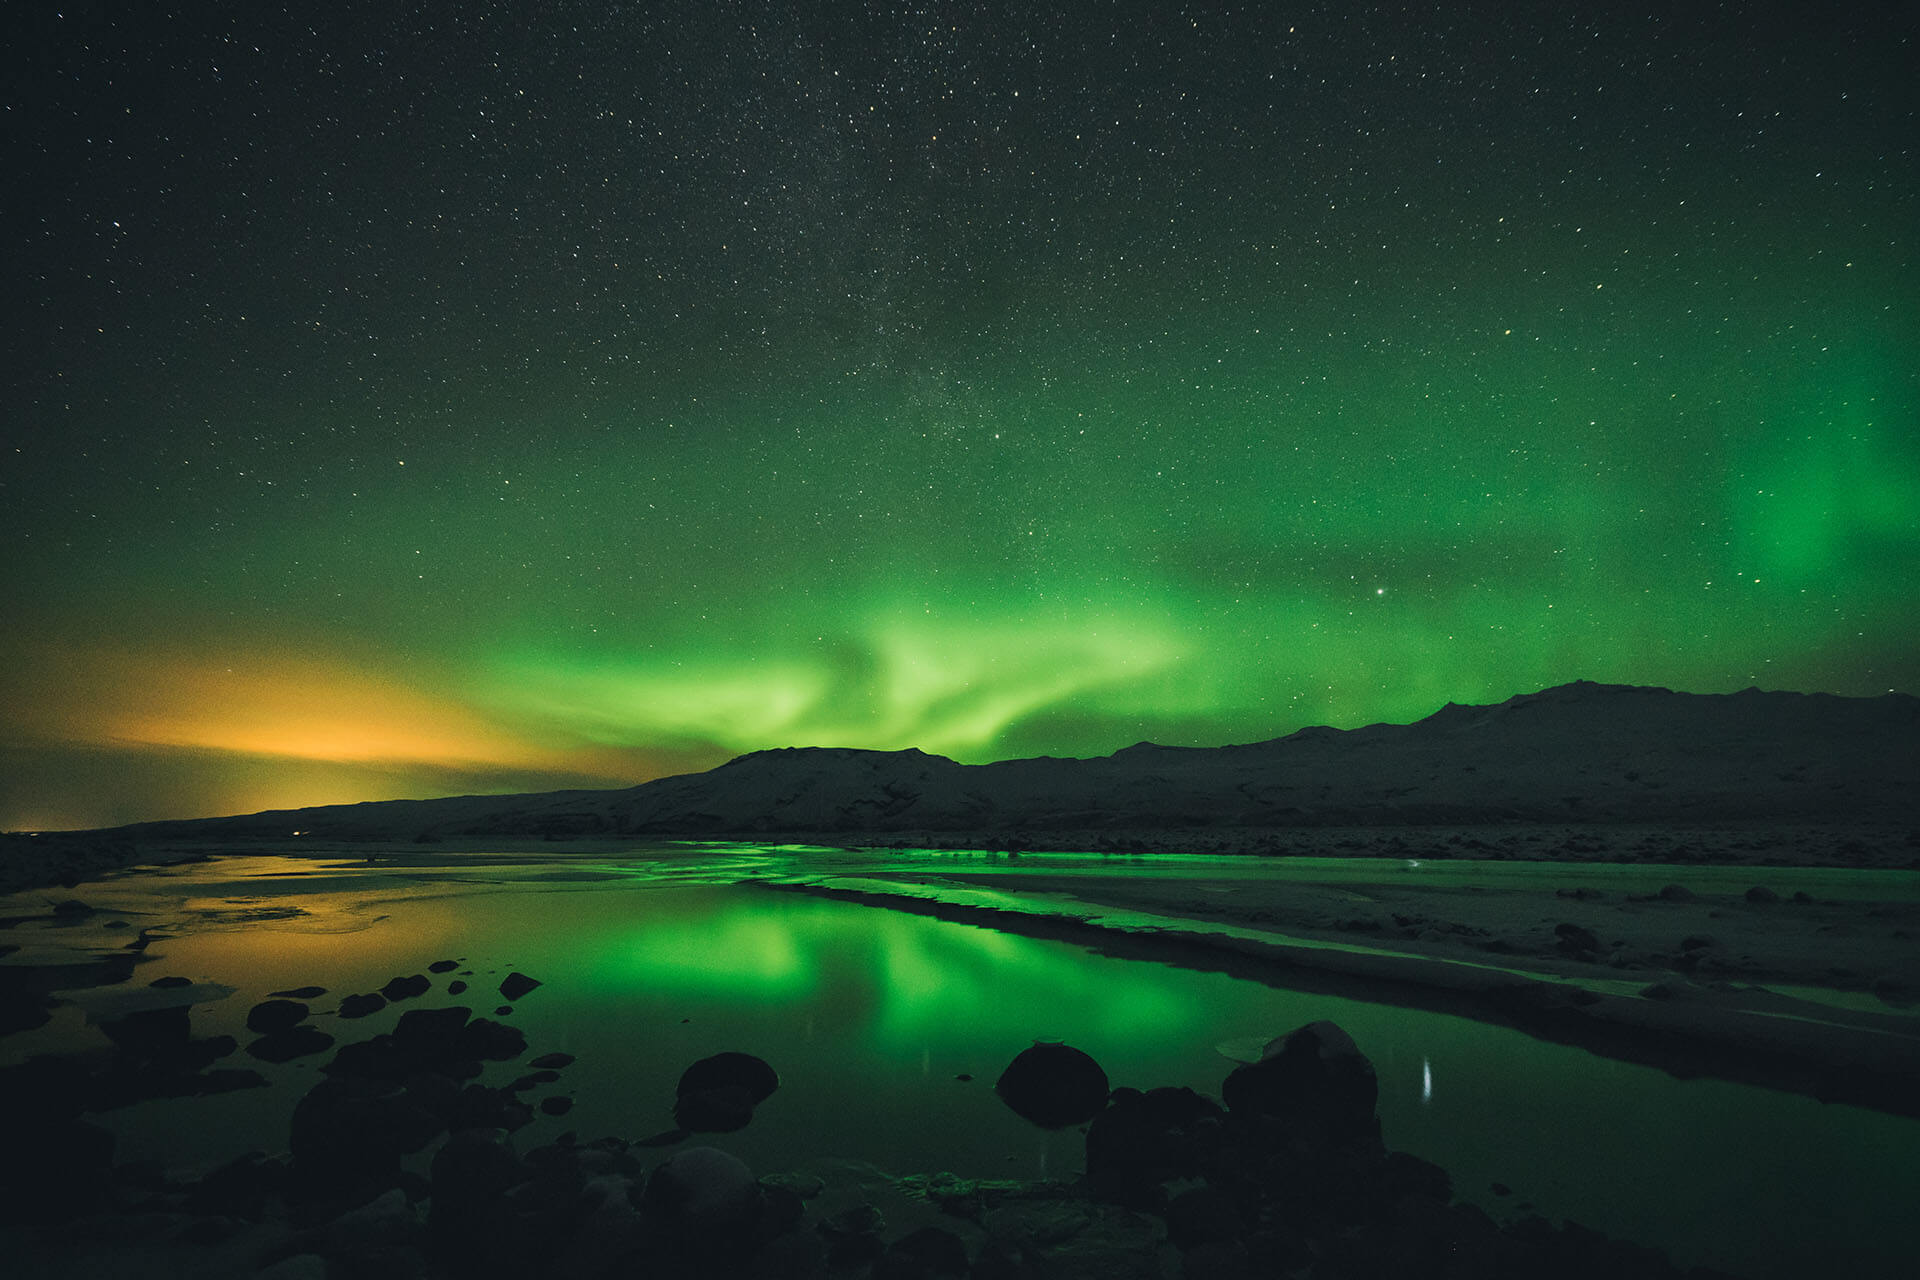 Voir les aurores boréales en Norvège